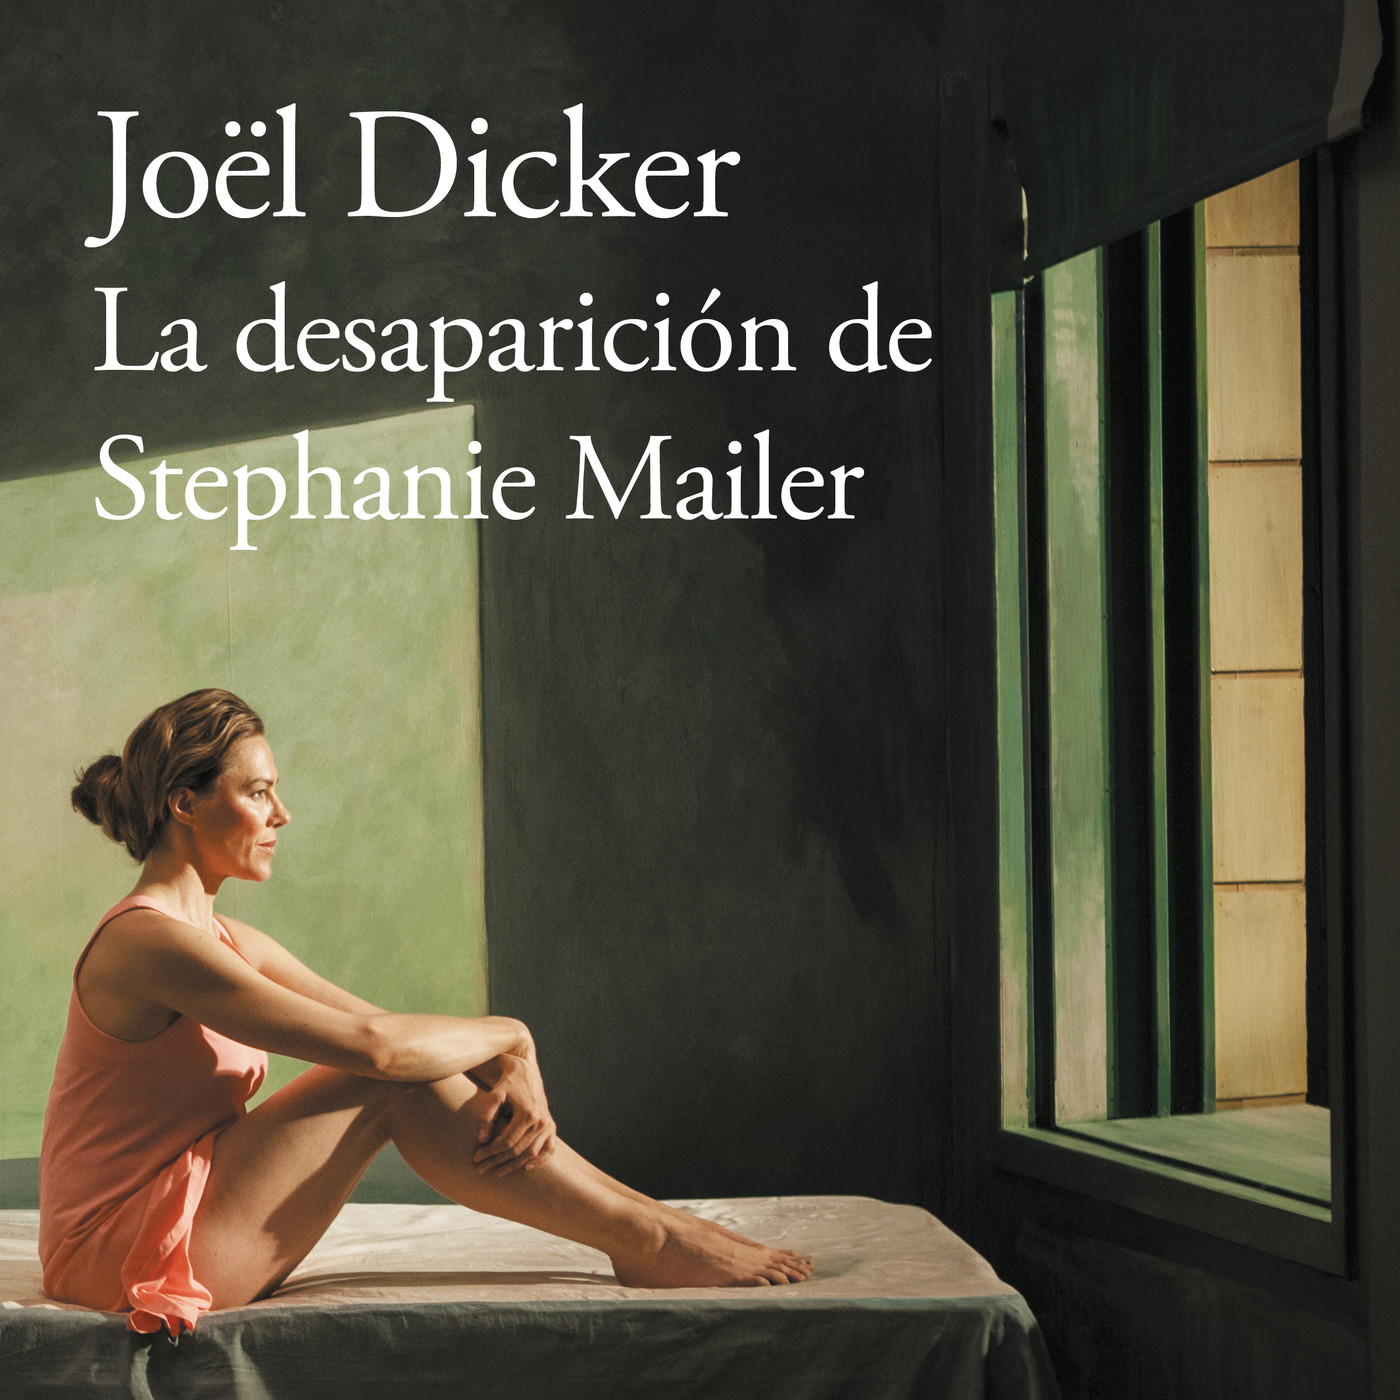 La desaparición de Stephanie Mailer (Jöel Dicker, 2018)